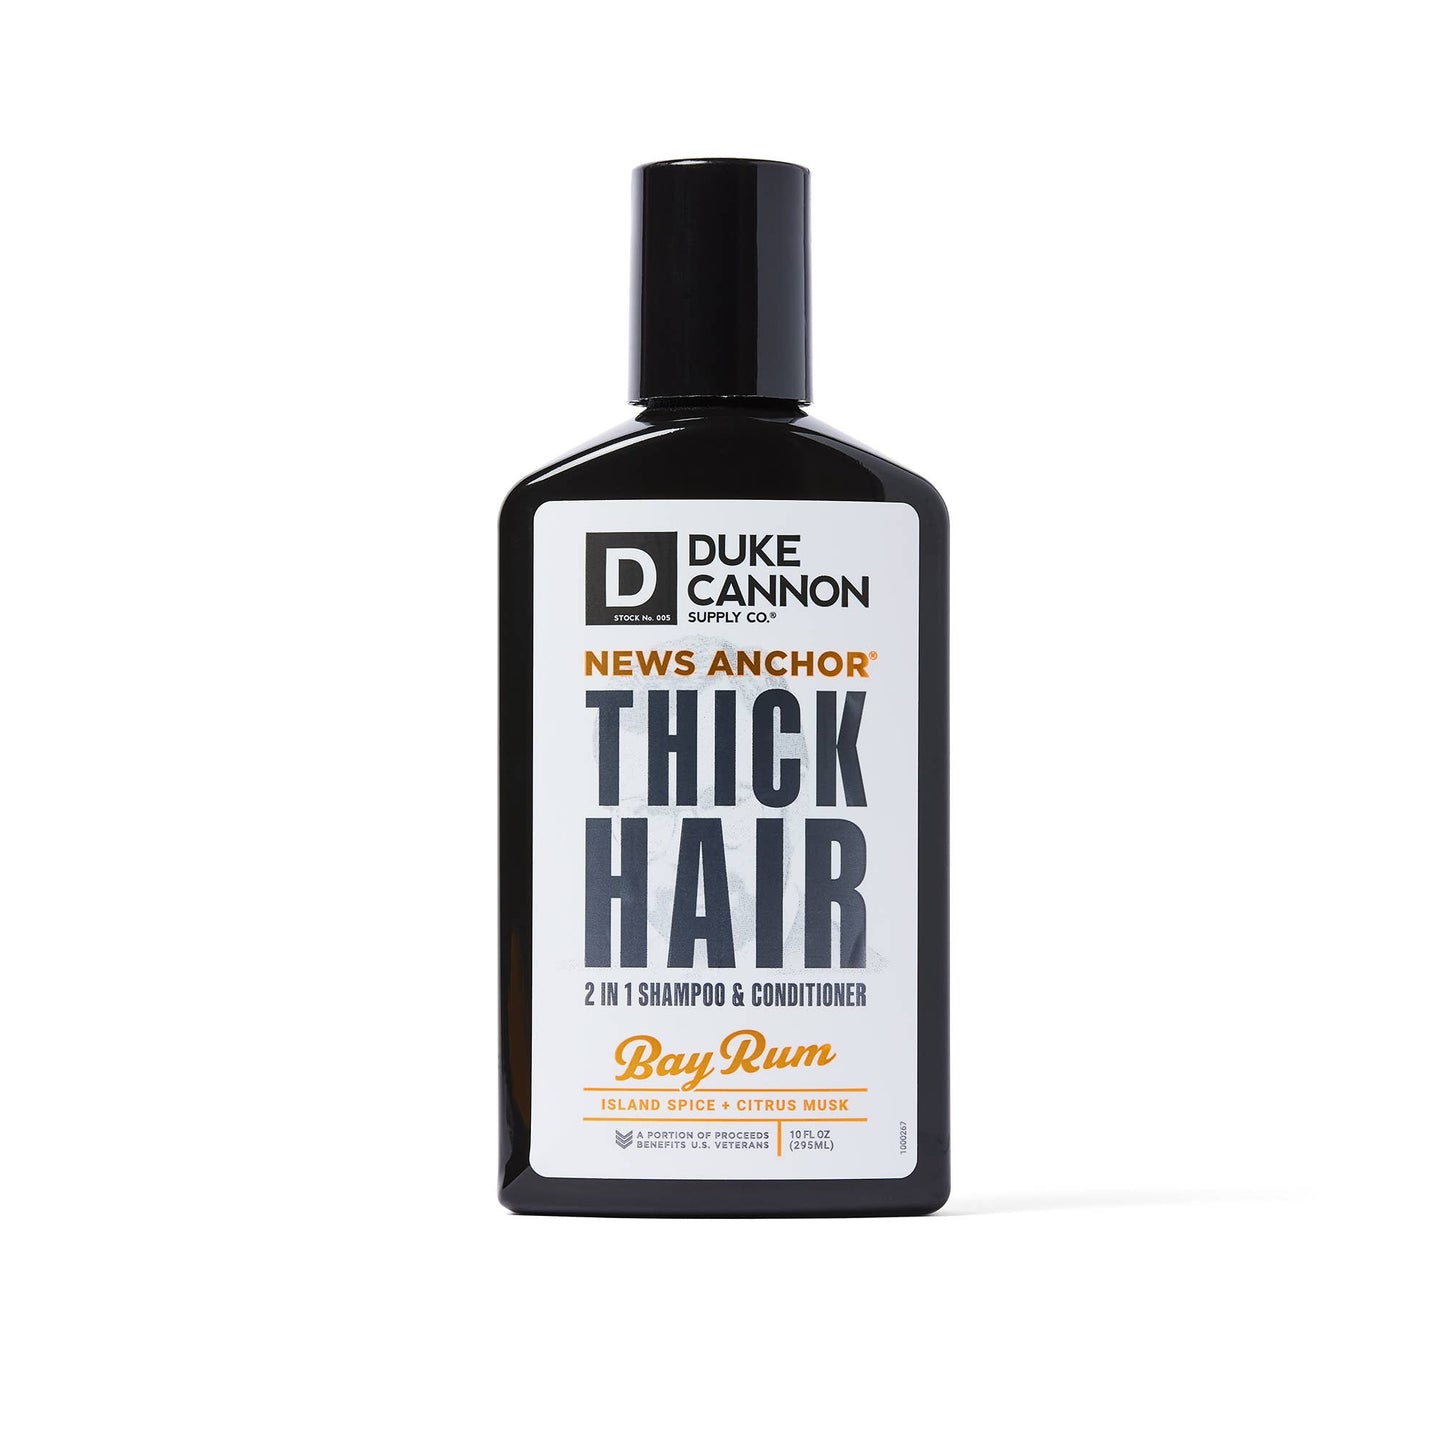 Duke Cannon - News Anchor 2-in-1 Hair Wash - Bay Rum